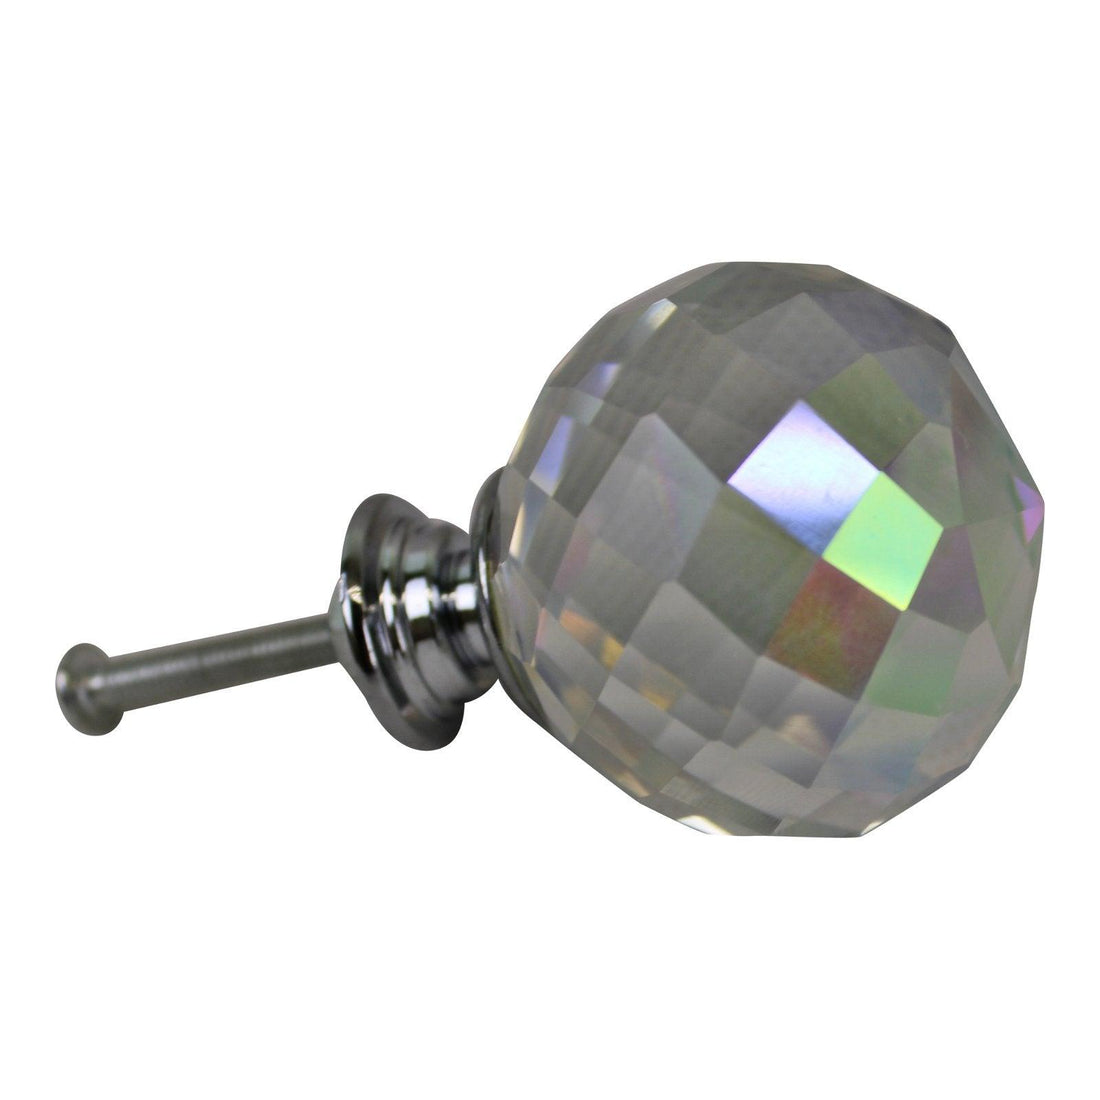 4cm Crystal Effect Doorknobs, Spherical, set of 4 - £22.99 - Doorknobs 